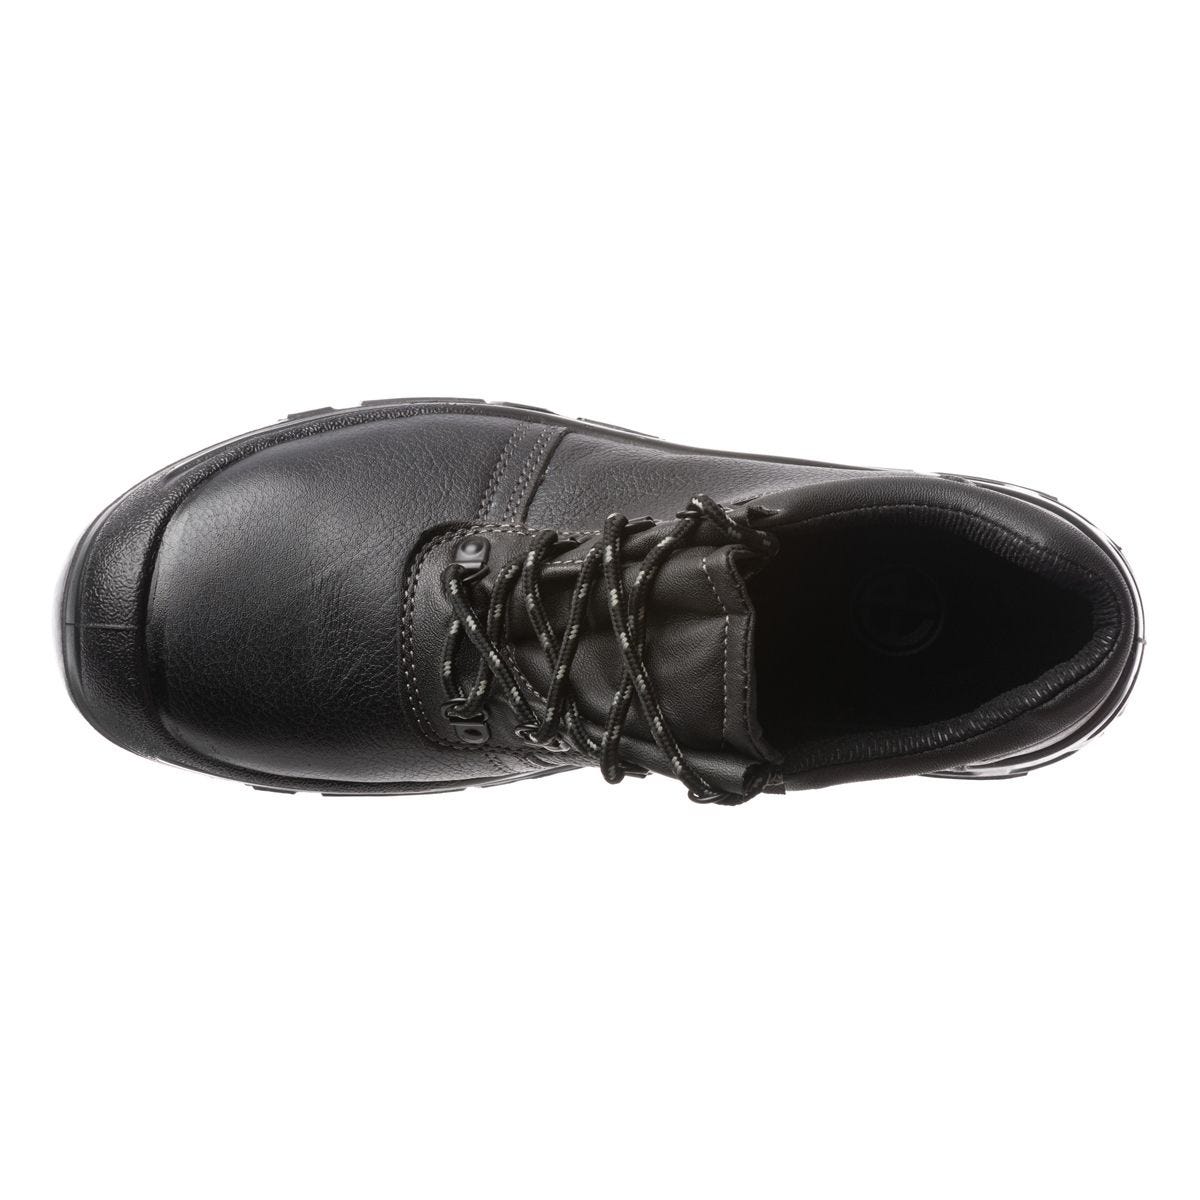 Chaussures de sécurité basses Azurite II S3 ESD noir - Coverguard - Taille 41 1